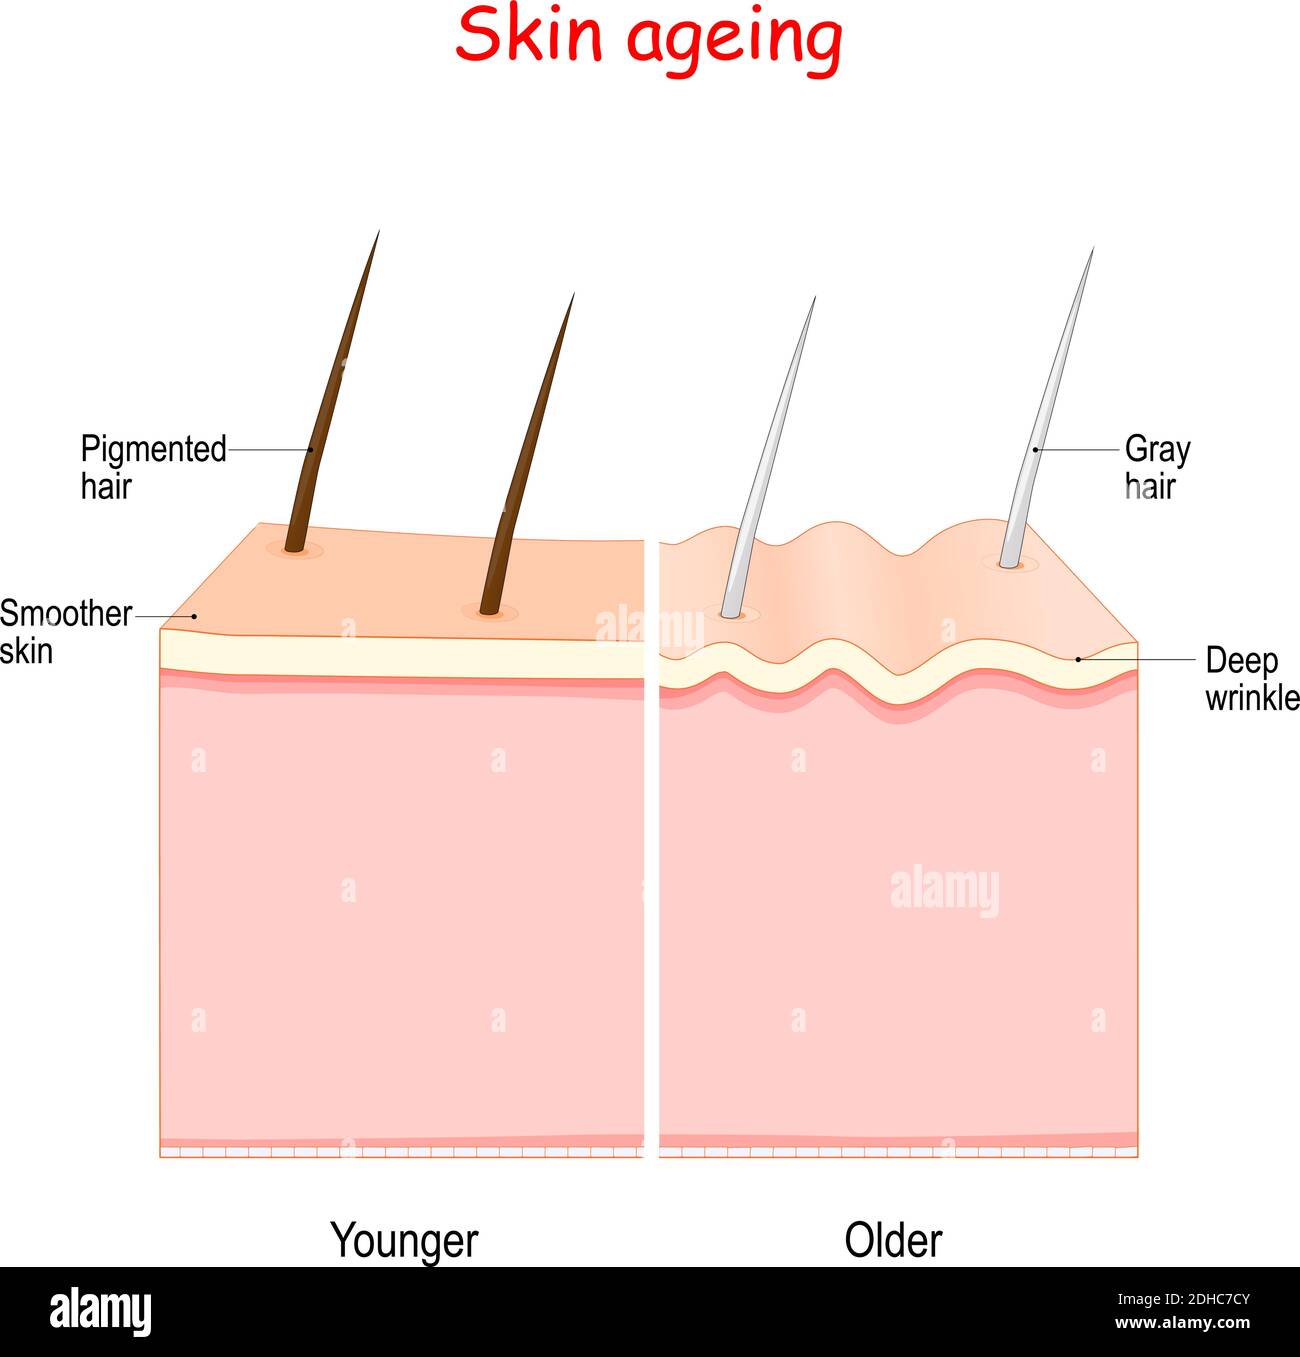 processo di invecchiamento. Dalla pelle più liscia più giovane con i capelli pigmentati alla pelle più vecchia con le rughe profonde e i capelli grigi. Illustrazione Vettoriale